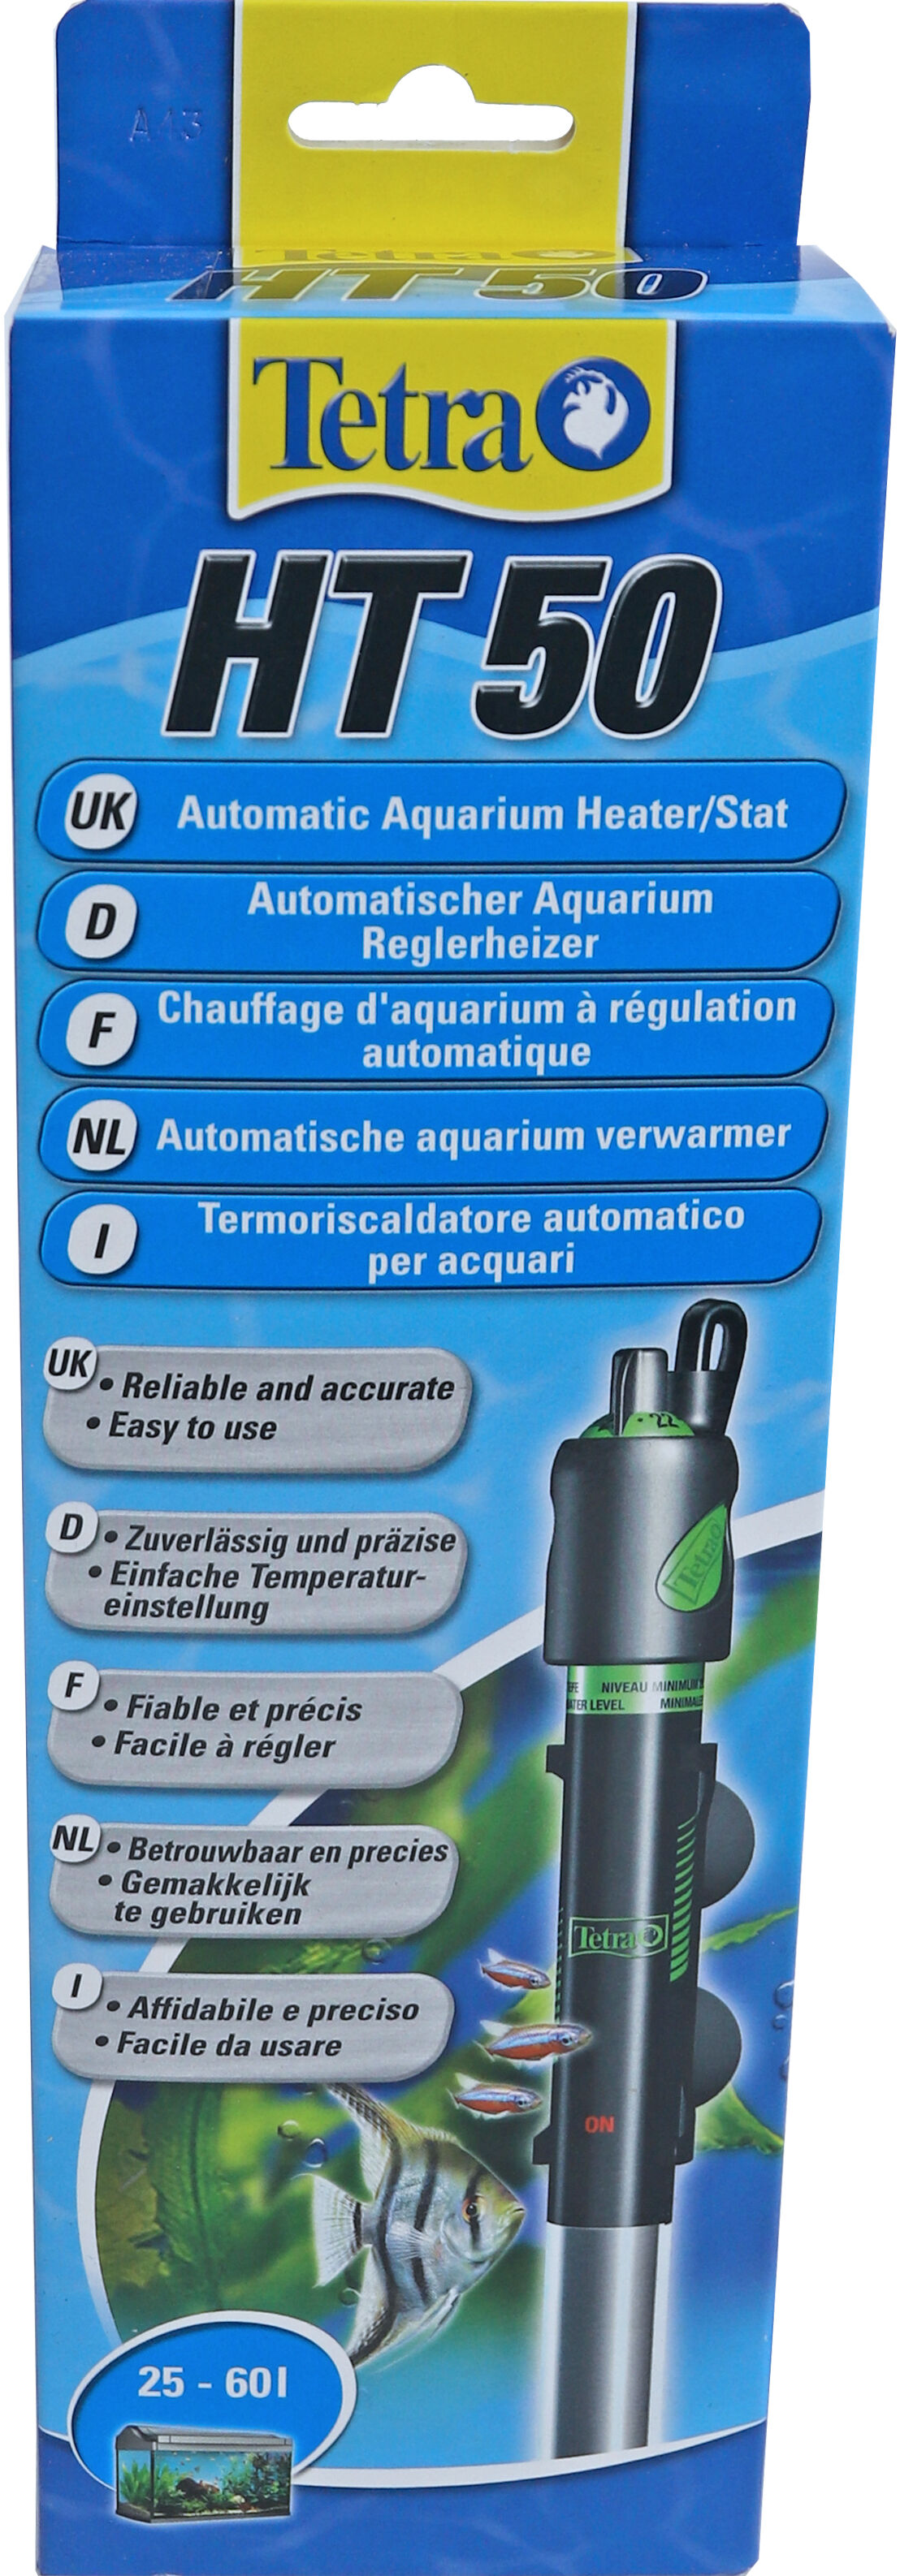 Onderwatercombinatie Ht 50